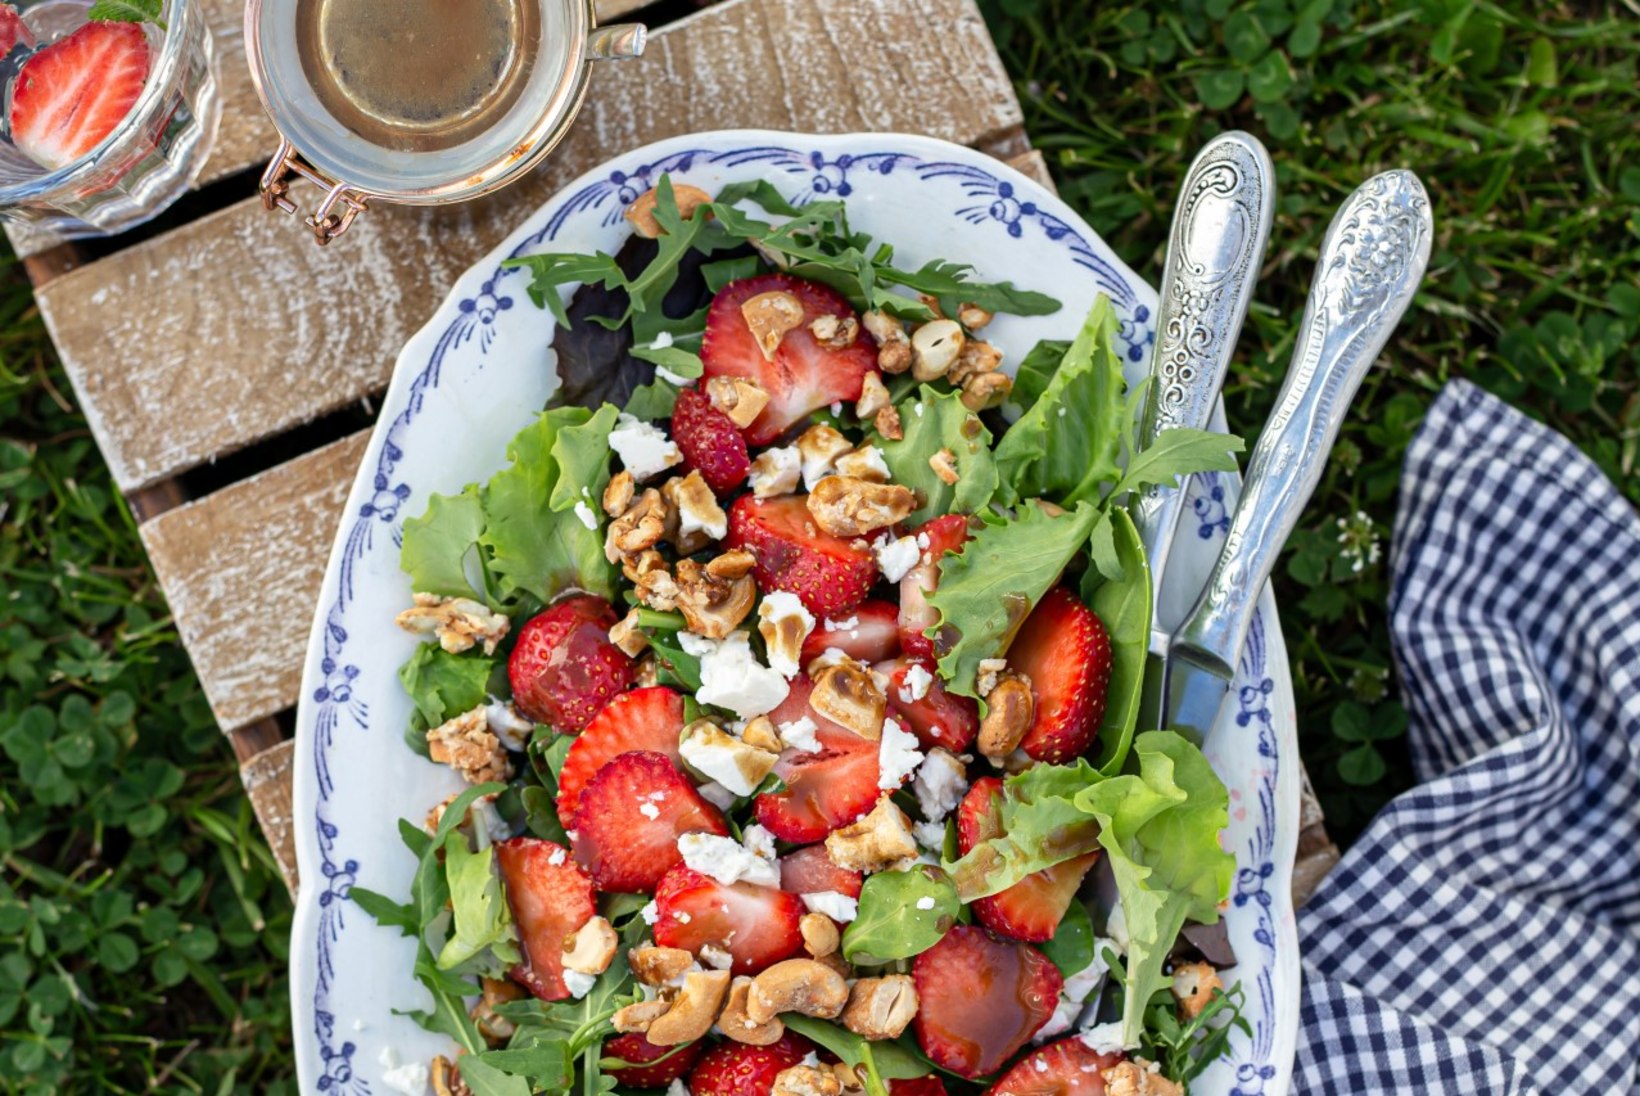 Suvised maasikasalatid – 15 minutit ja valmis!